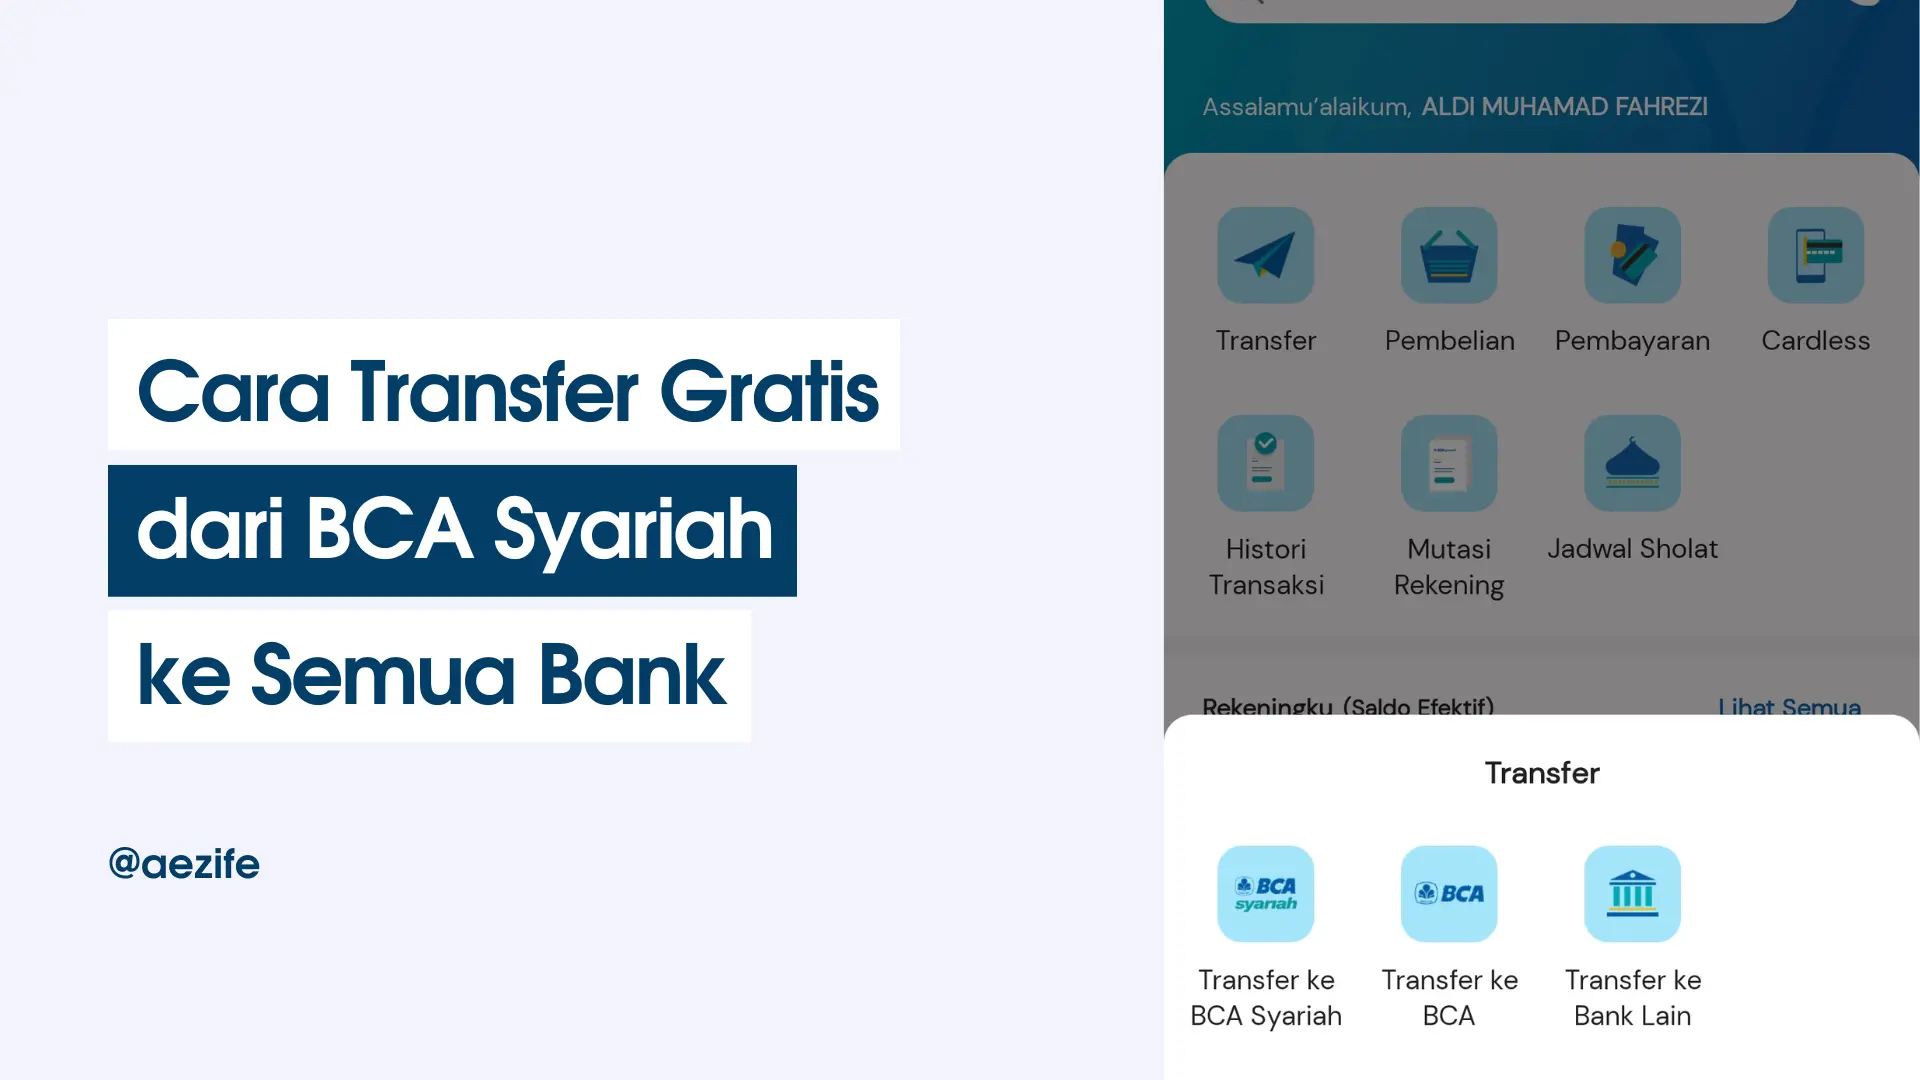 Cara Transfer Gratis dari BCA Syariah ke Semua Bank by @aezife (COVER)